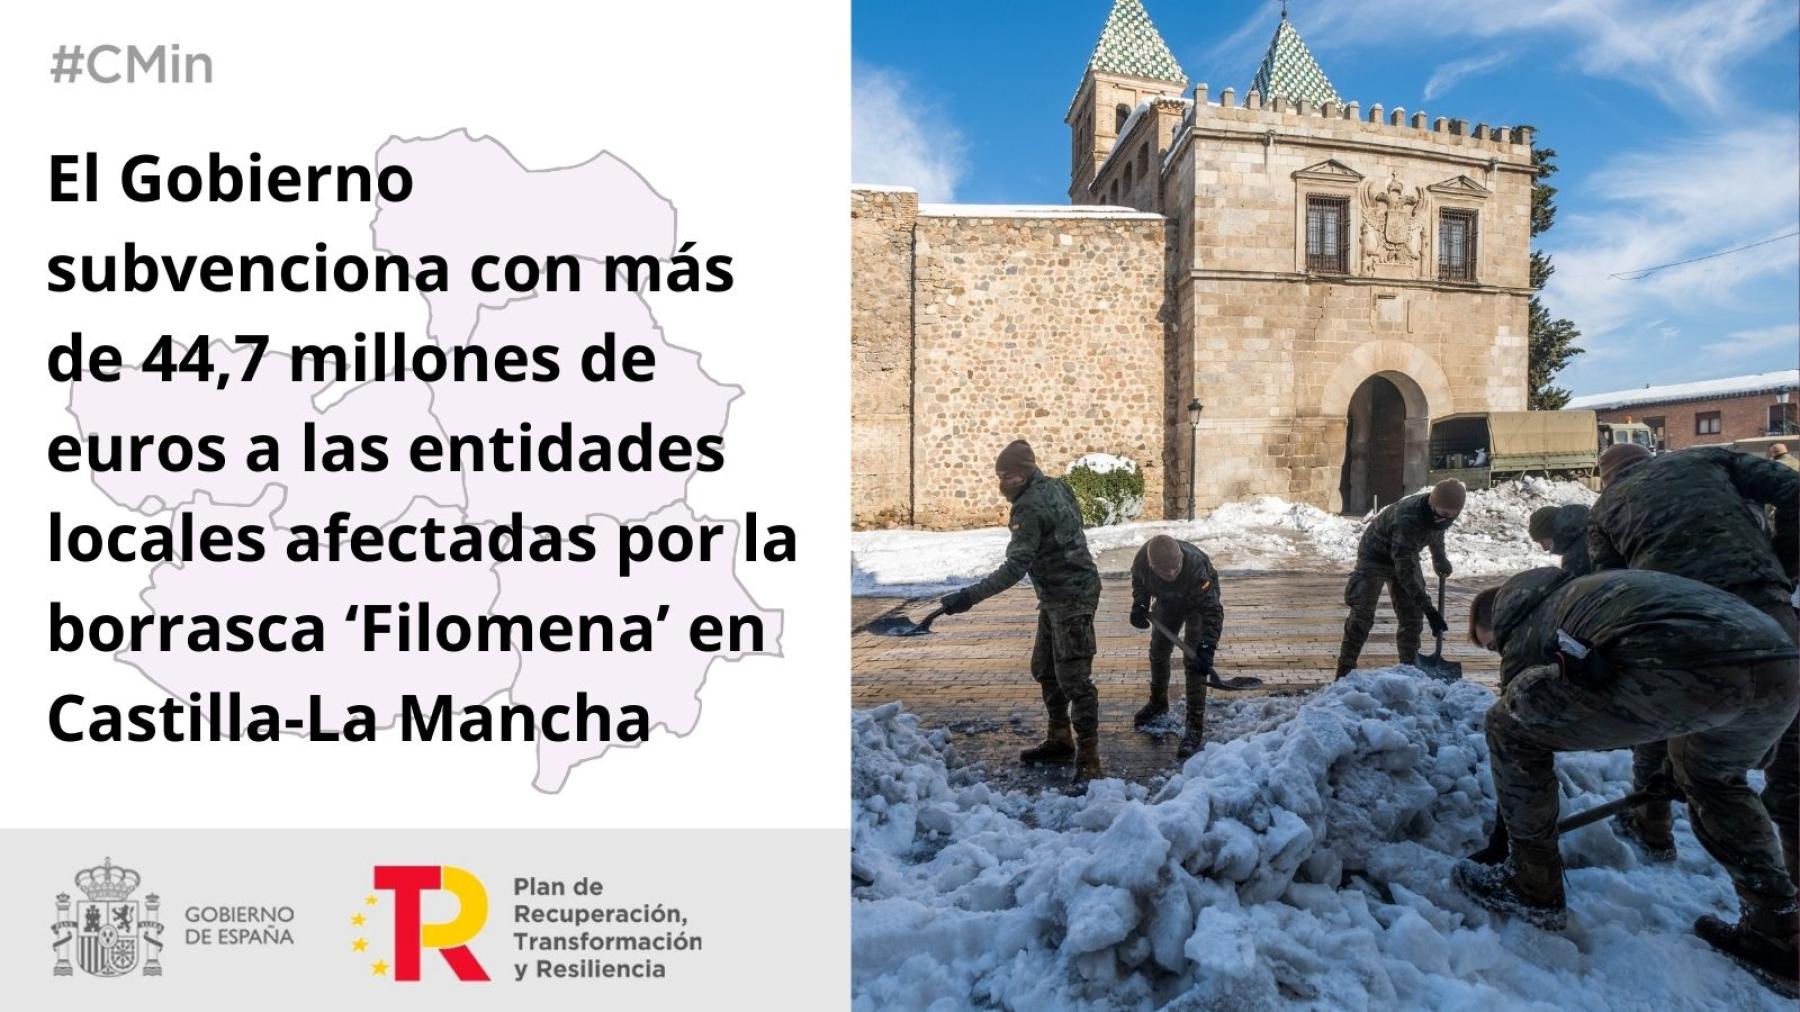 El Gobierno subvenciona con más de 44,7 millones de euros a las entidades locales afectadas por la borrasca ‘Filomena’ en Castilla-La Mancha